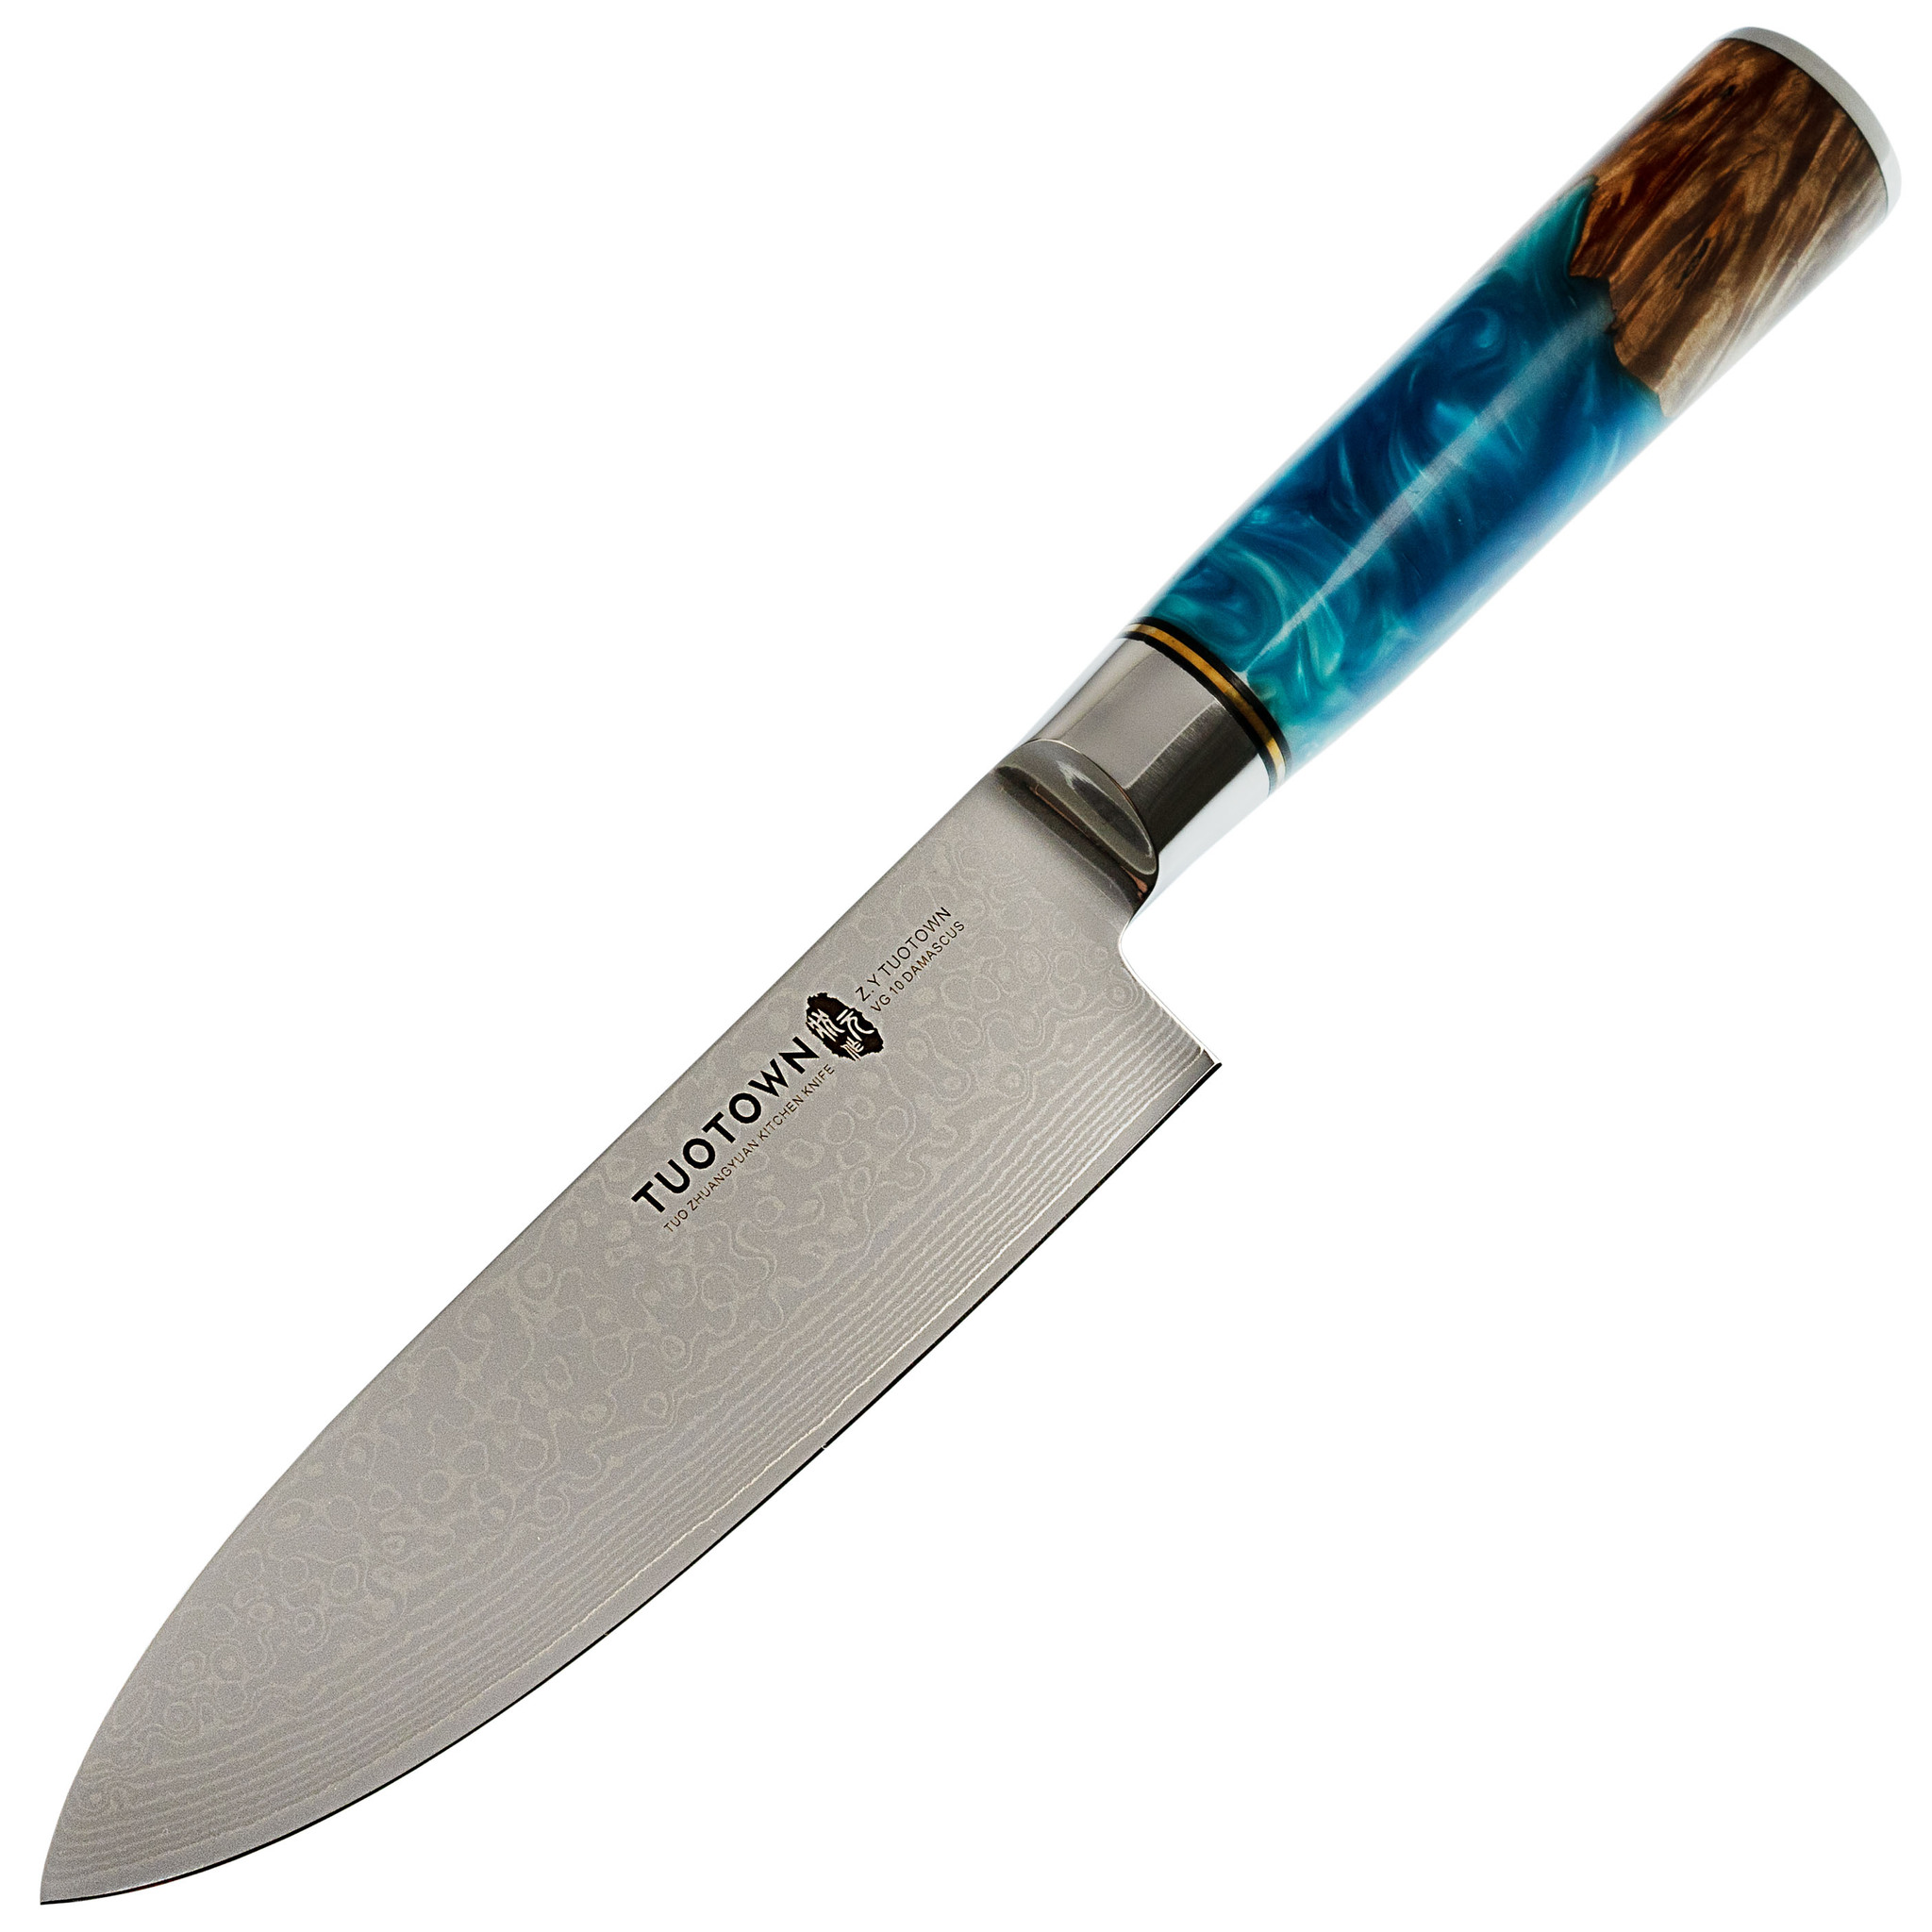 Нож кухонный Tuotown DM003, сталь VG-10 Damascus, рукоять дерево/эпоксидка складной нож civivi appalachian drifter ii сталь damascus carbon fiber g10